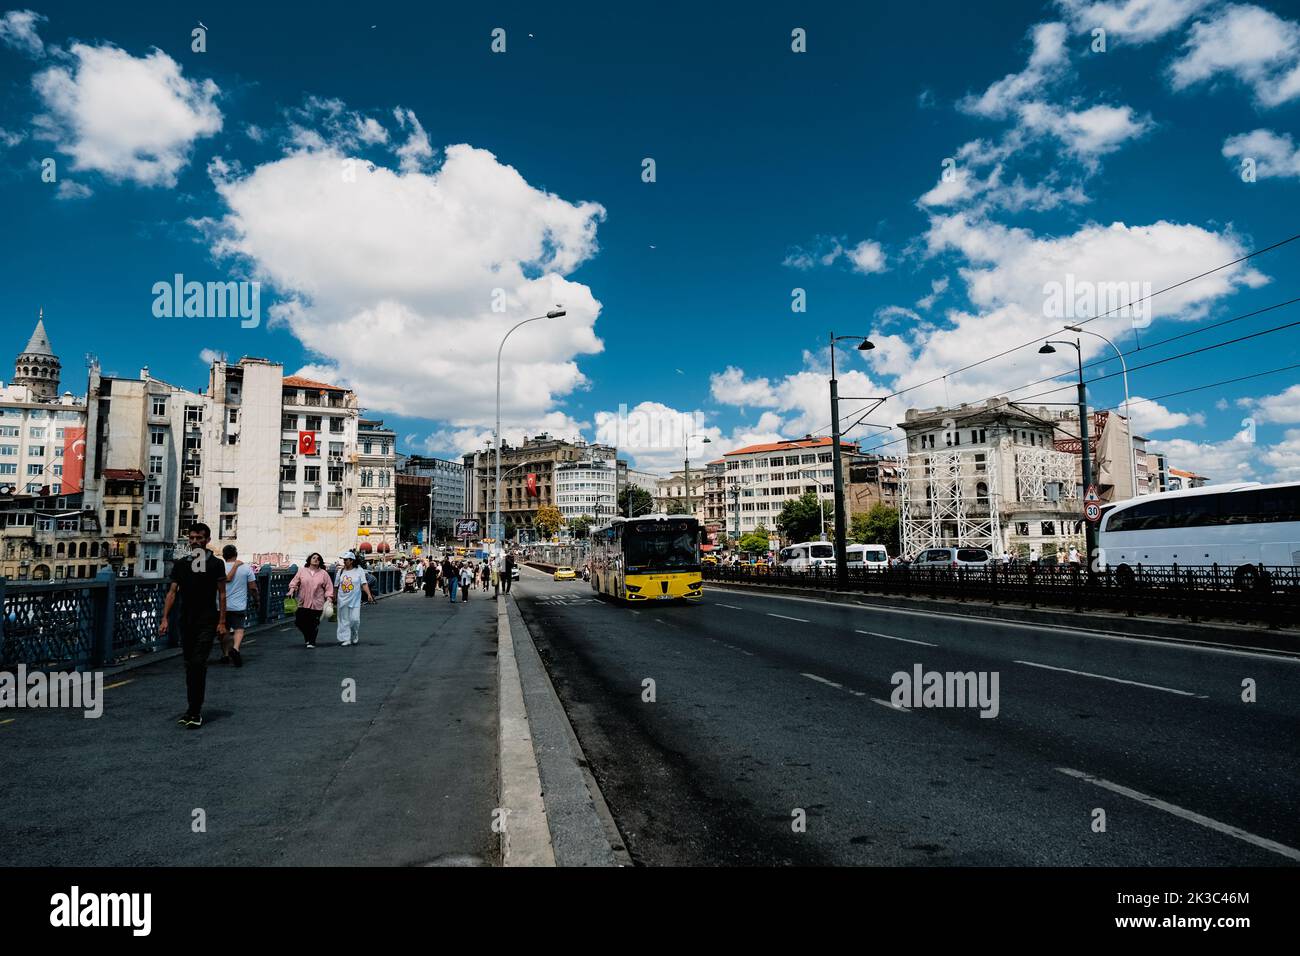 Stadtbild von der Galata-Brücke in Istanbul, Menschen, die auf einer Brücke laufen, Autos und Busse im Blick, Reisen und Reisen in Istanbul, blauer bewölktes Himmel im Sommer Stockfoto